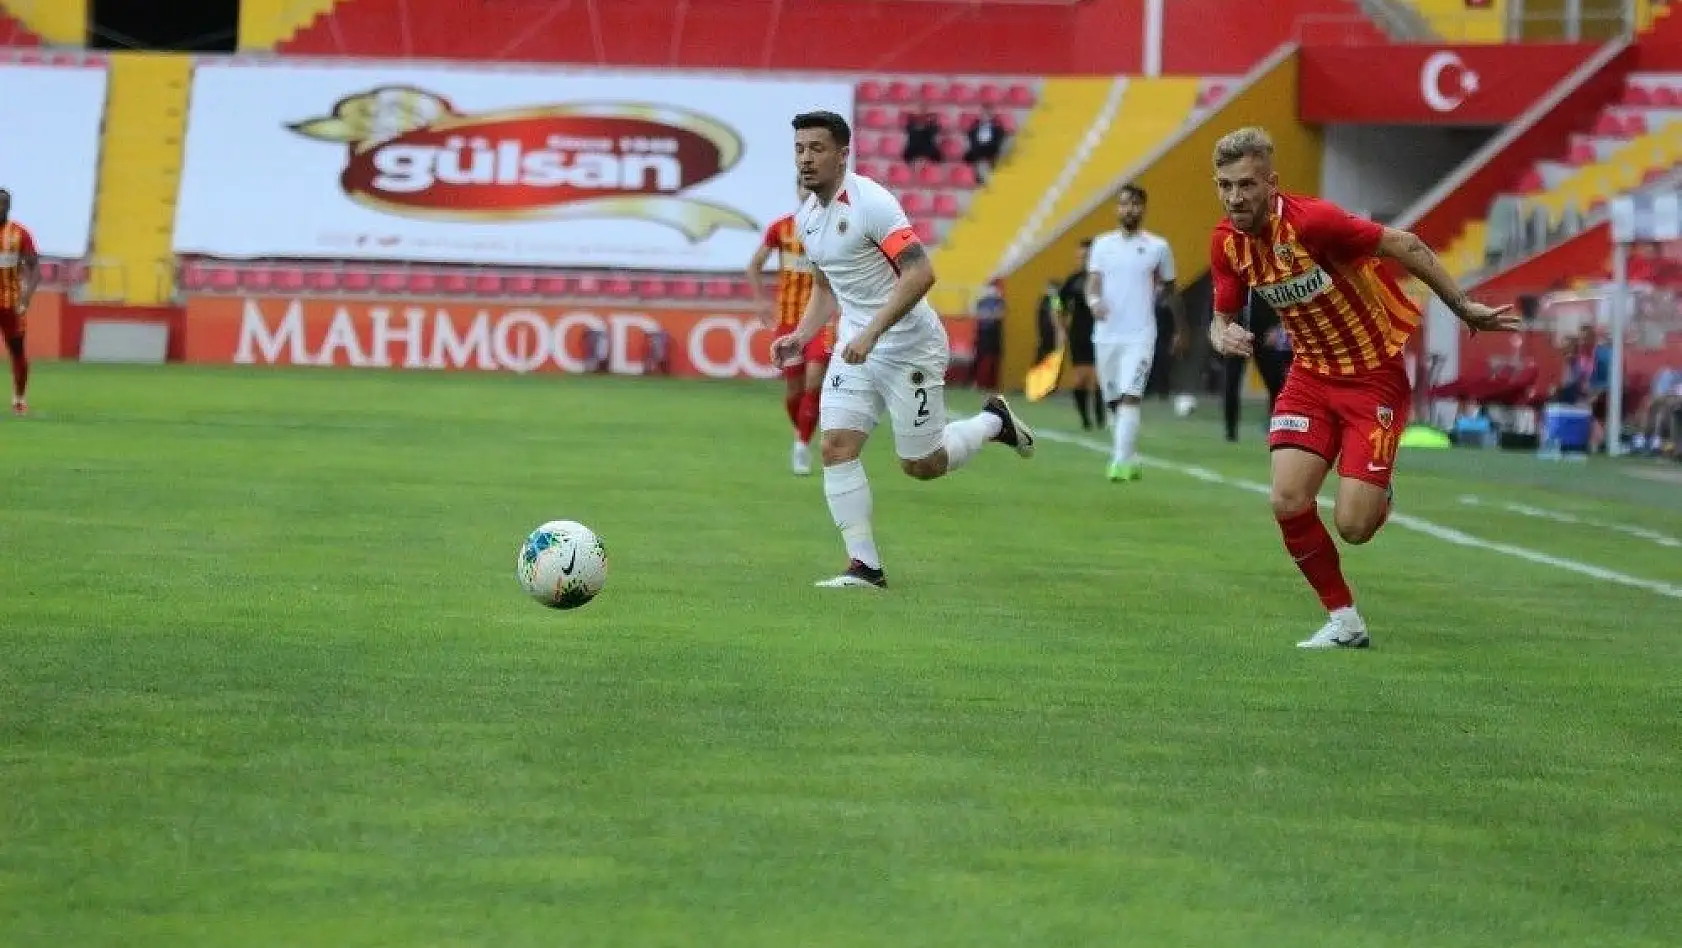 Süper Lig: Hes Kablo Kayserispor: 2 - Gençlerbirliği: 0 (Maç Sonu)
